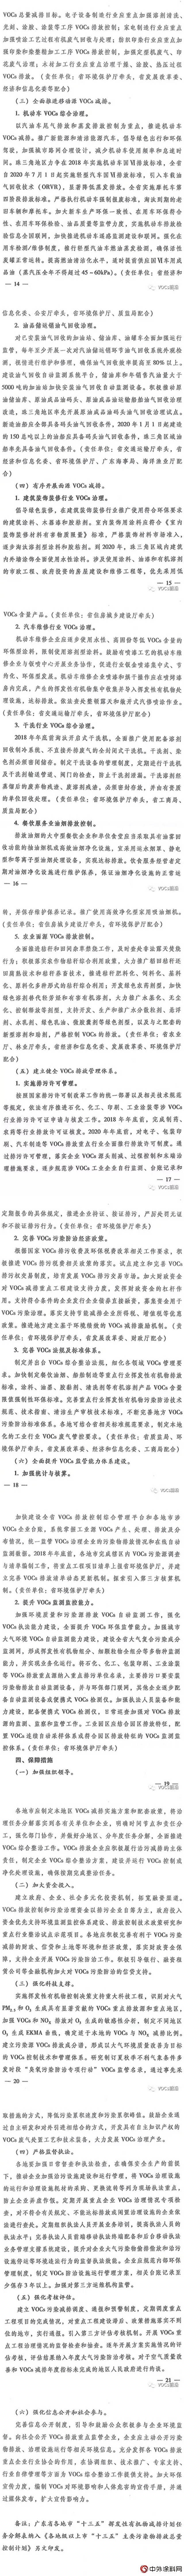 广东五部门印发《挥发性有机物(VOCs)整治与减排工作方案》(2018-2020年)